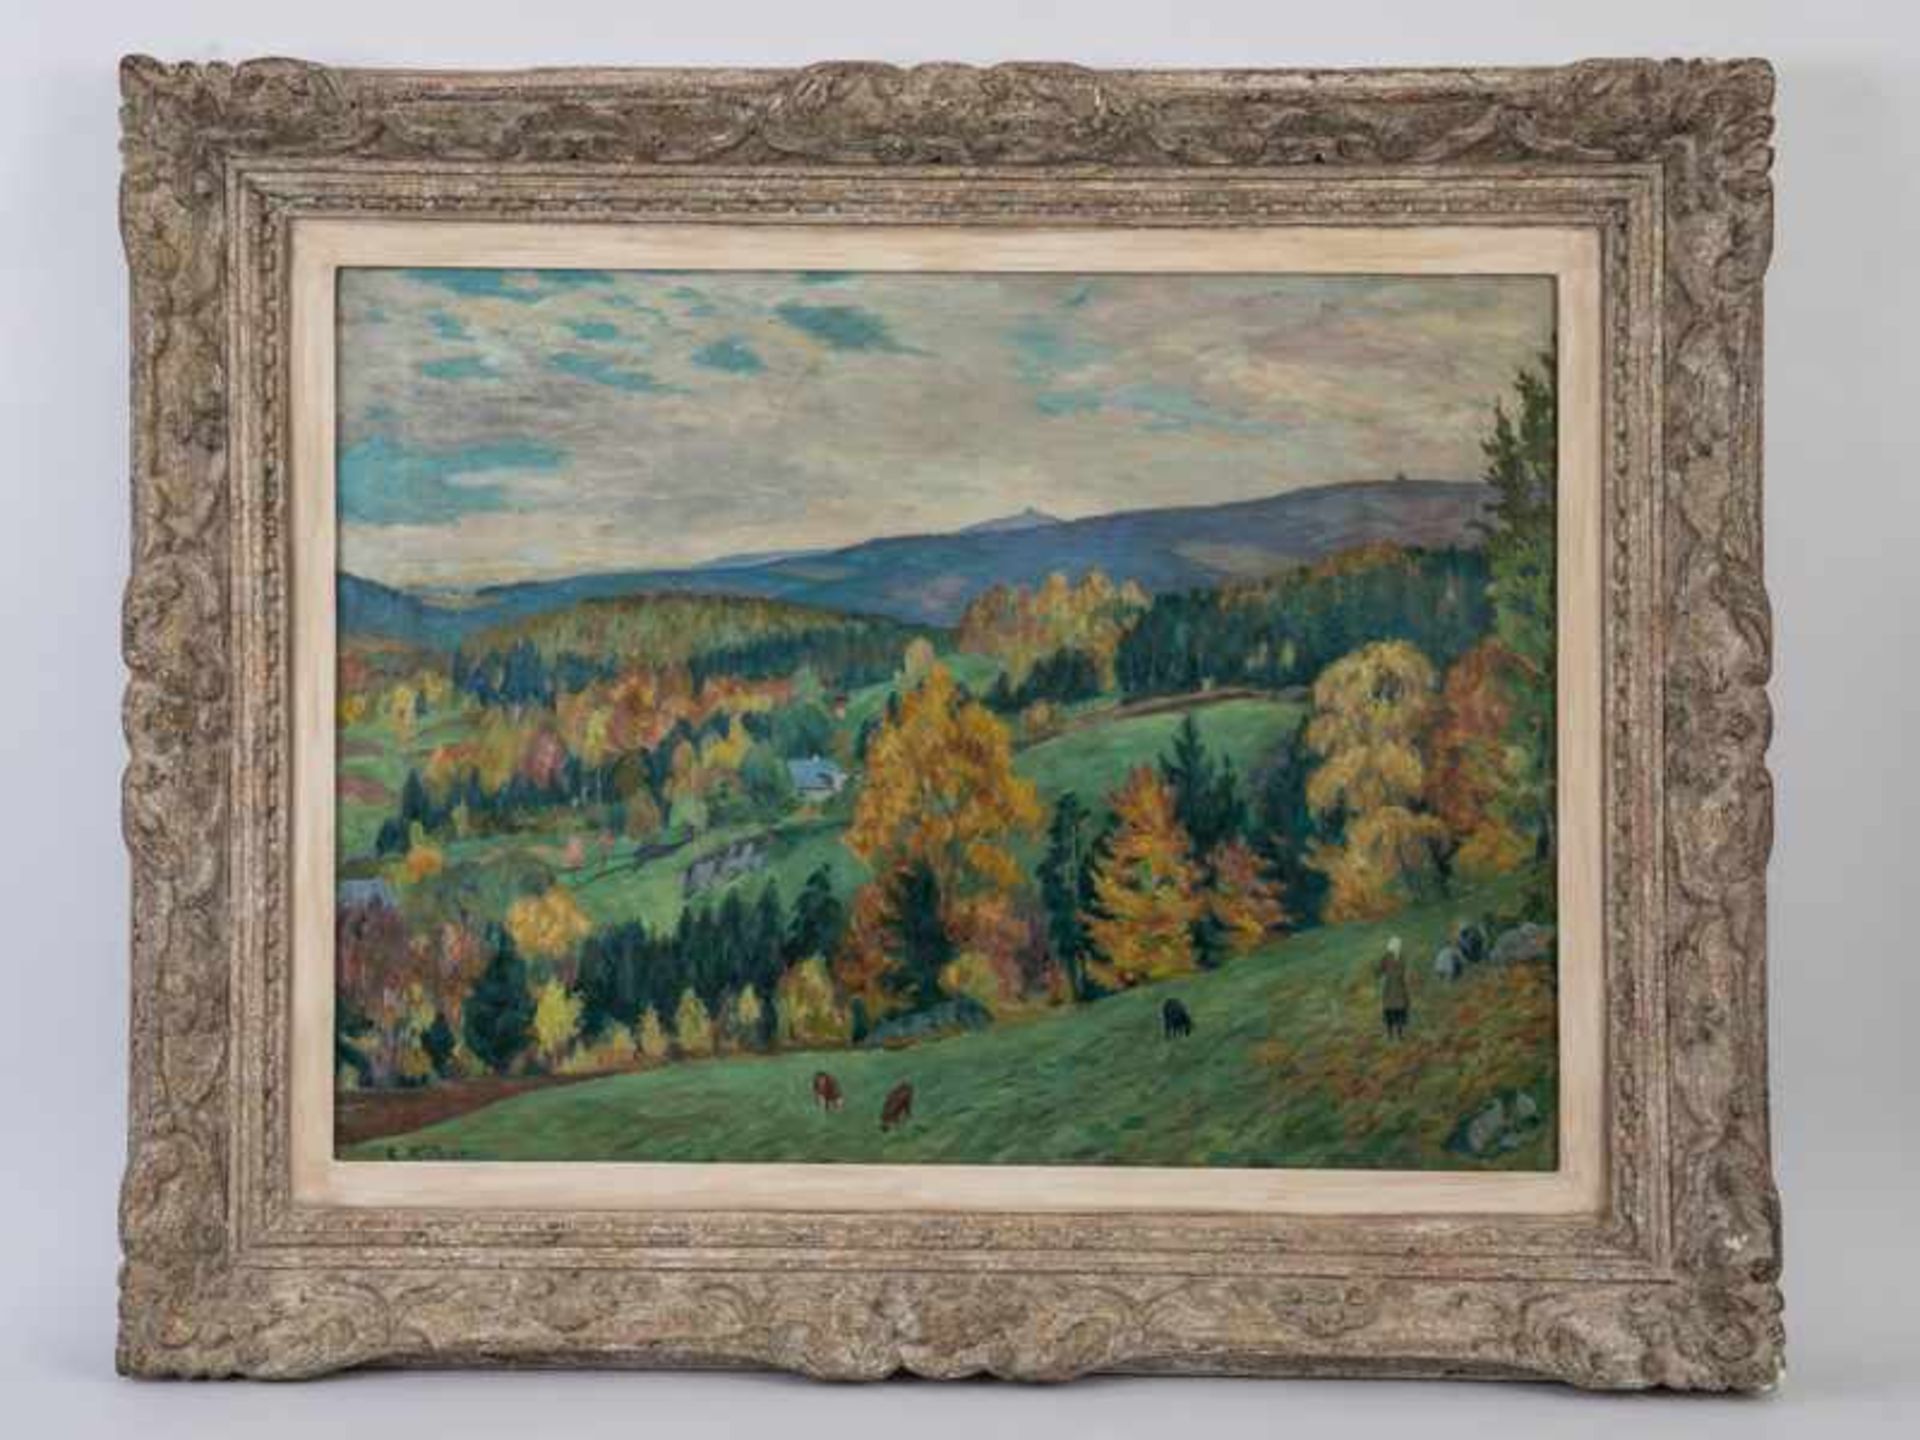 Eitner, Ernst (1867 - 1955). Öl auf Leinwand, "Herbst im Riesengebirge", spätimpressionistische